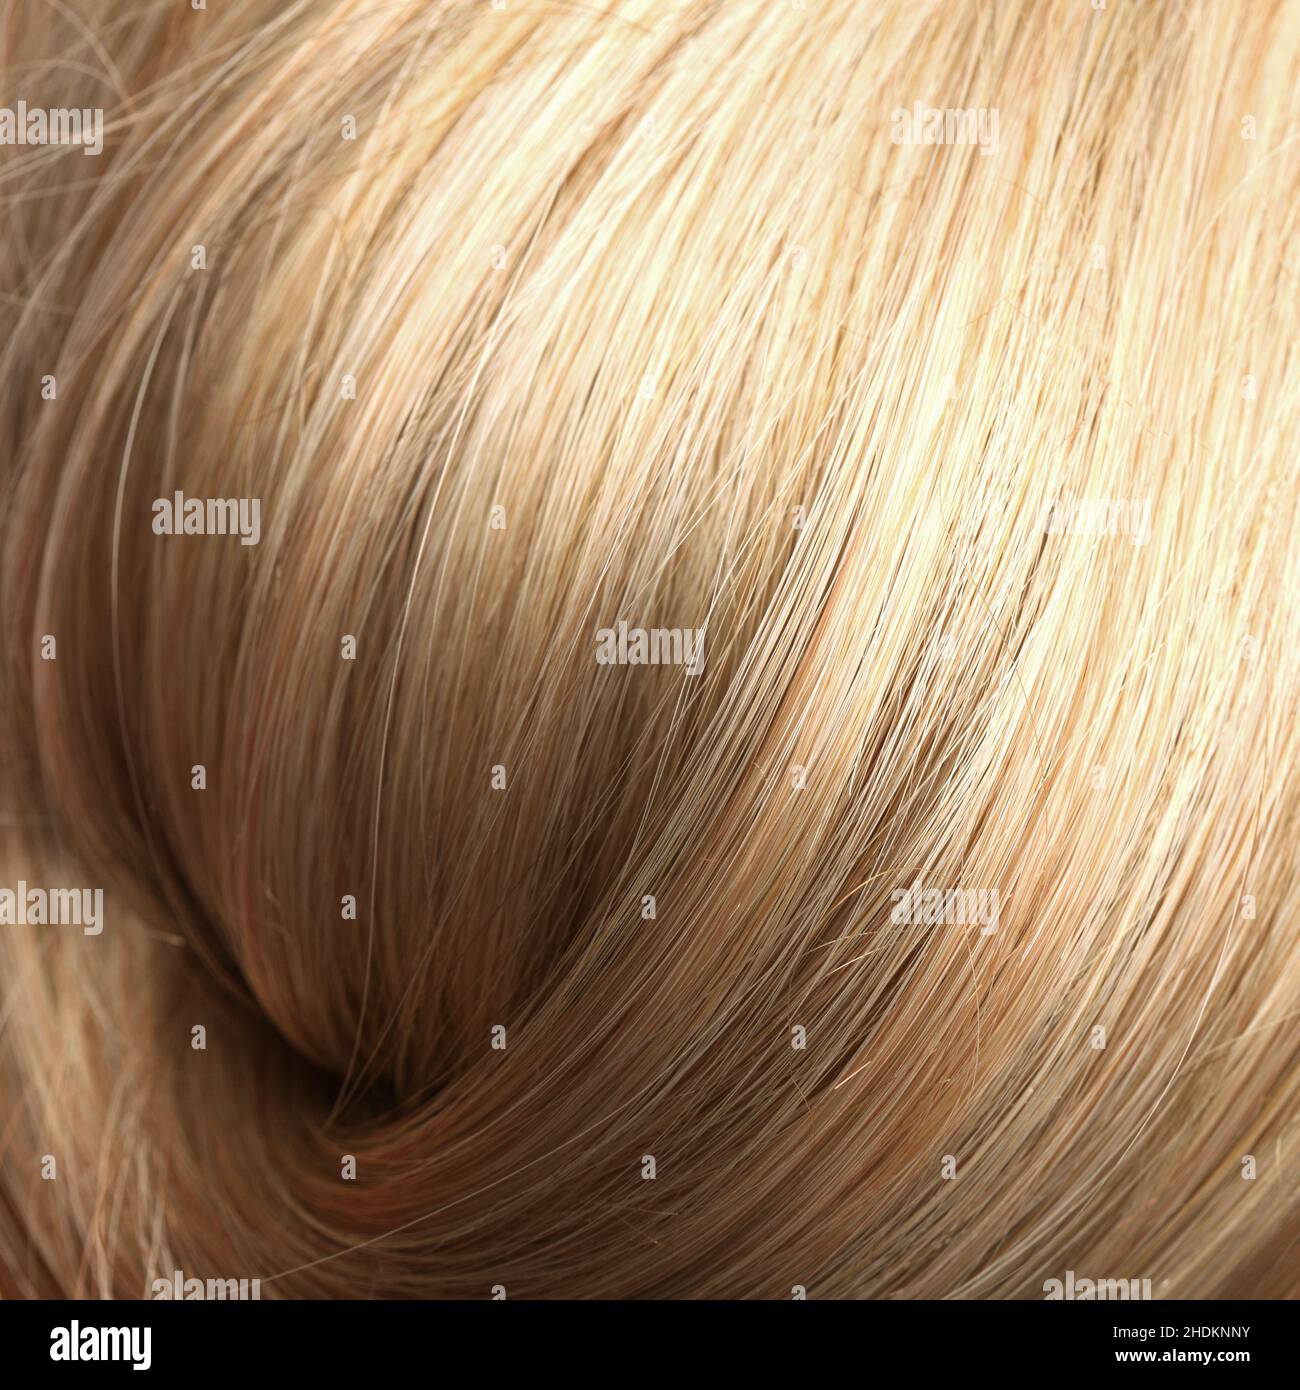 blonde hair, hair, blond, blonde, blonde hairs, hairs Stock Photo